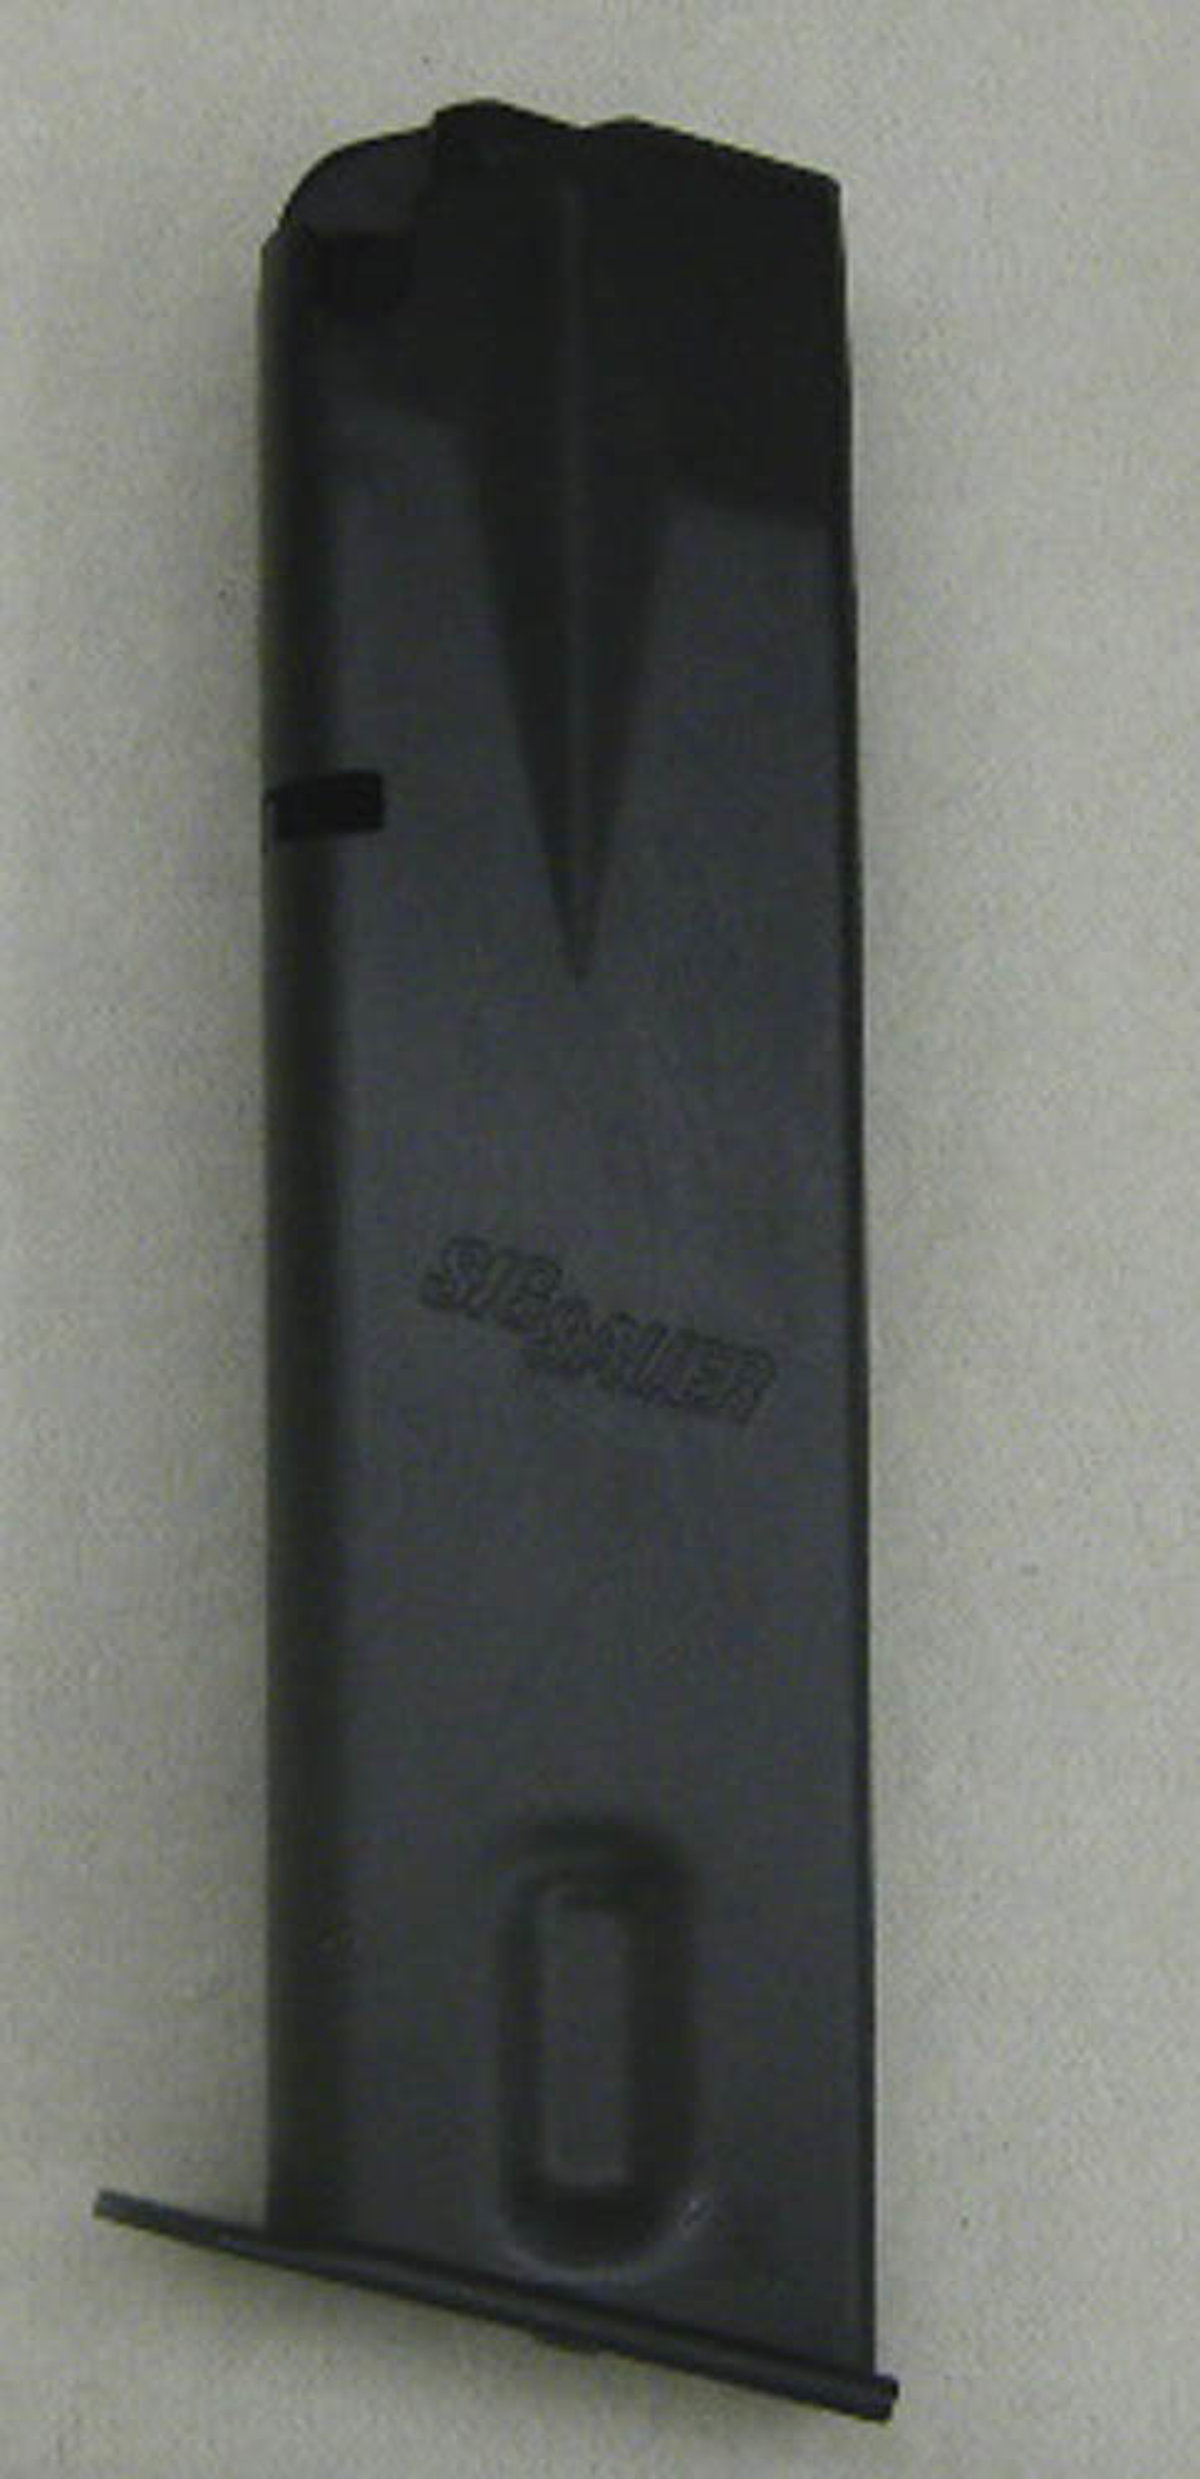 Magazin SigSauer P226 9mm Luger